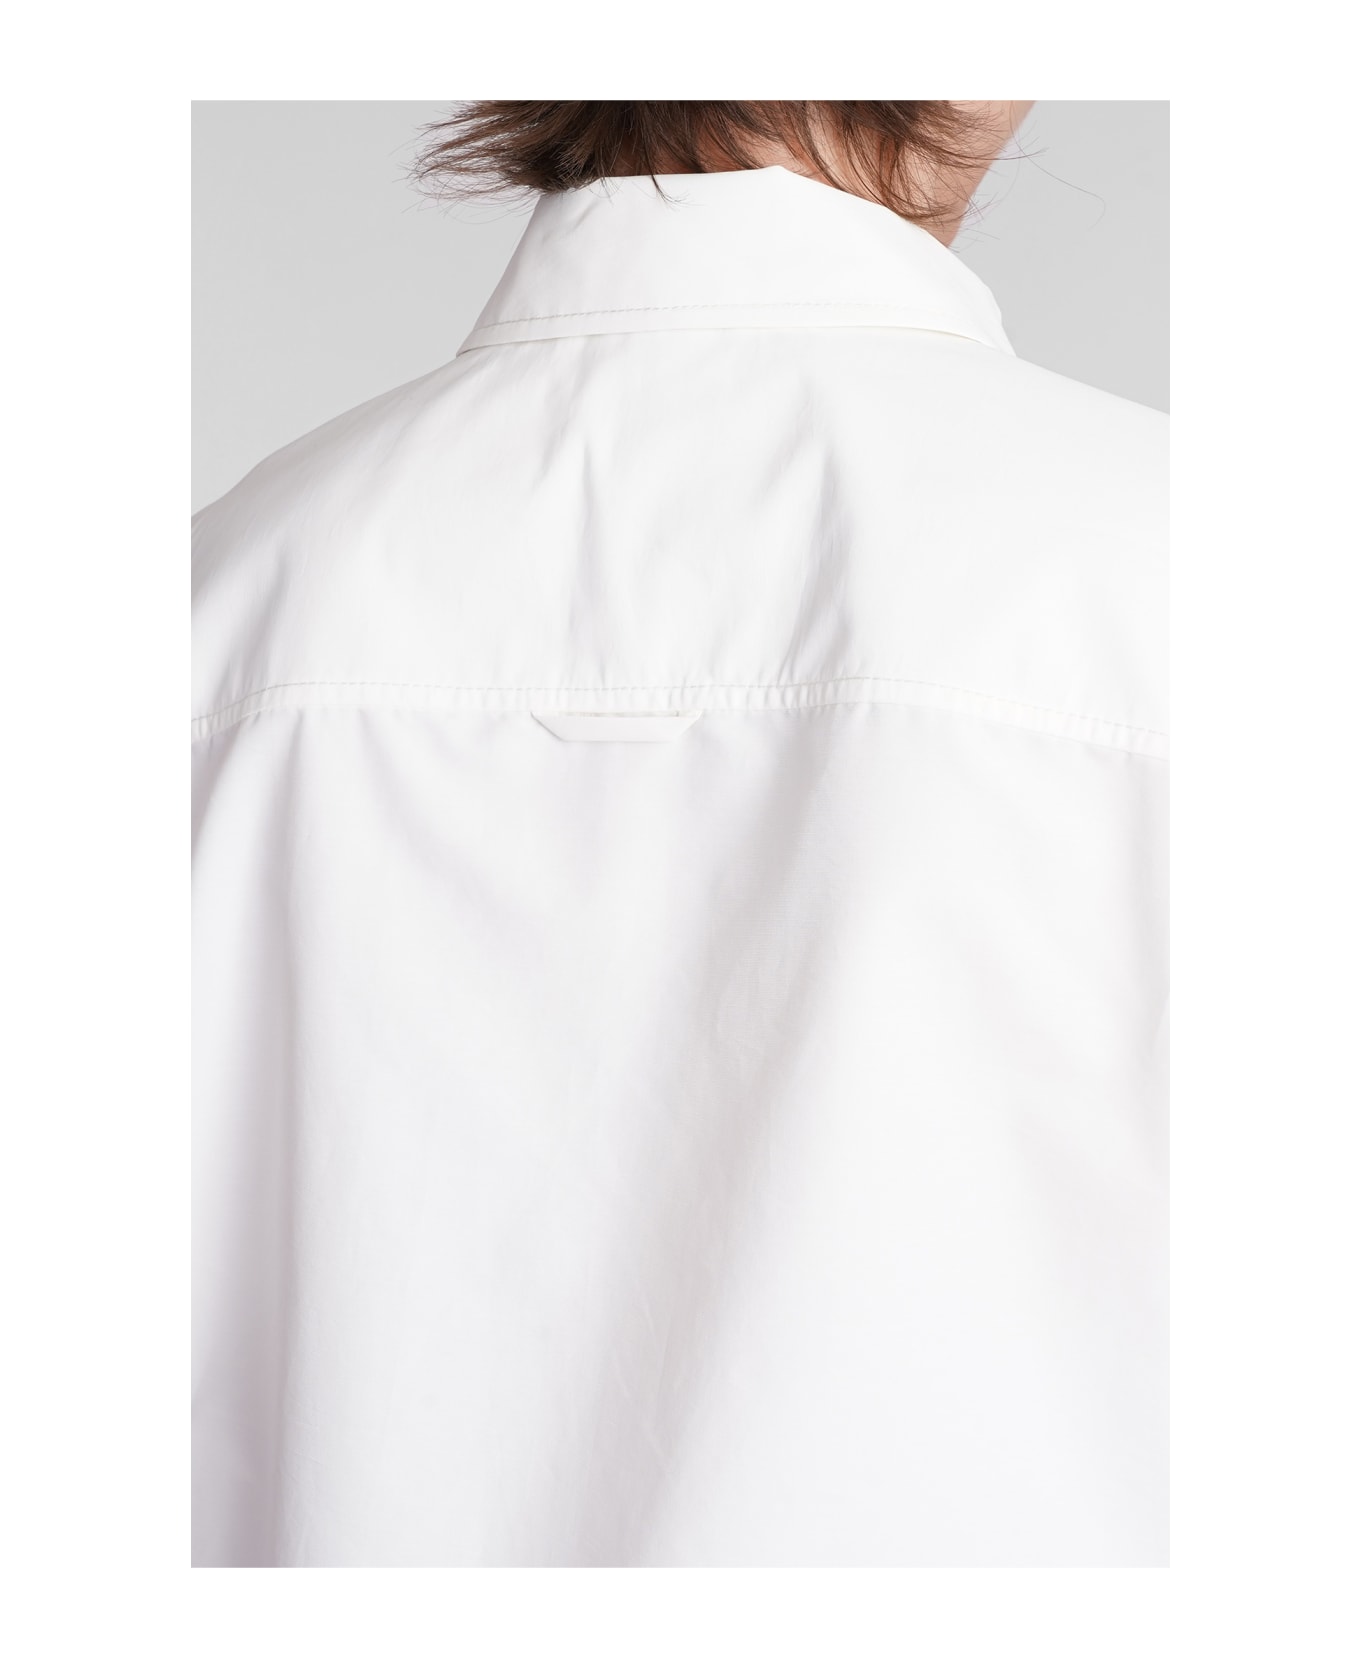 Simkhai Ryett Shirt In White Cotton - white シャツ